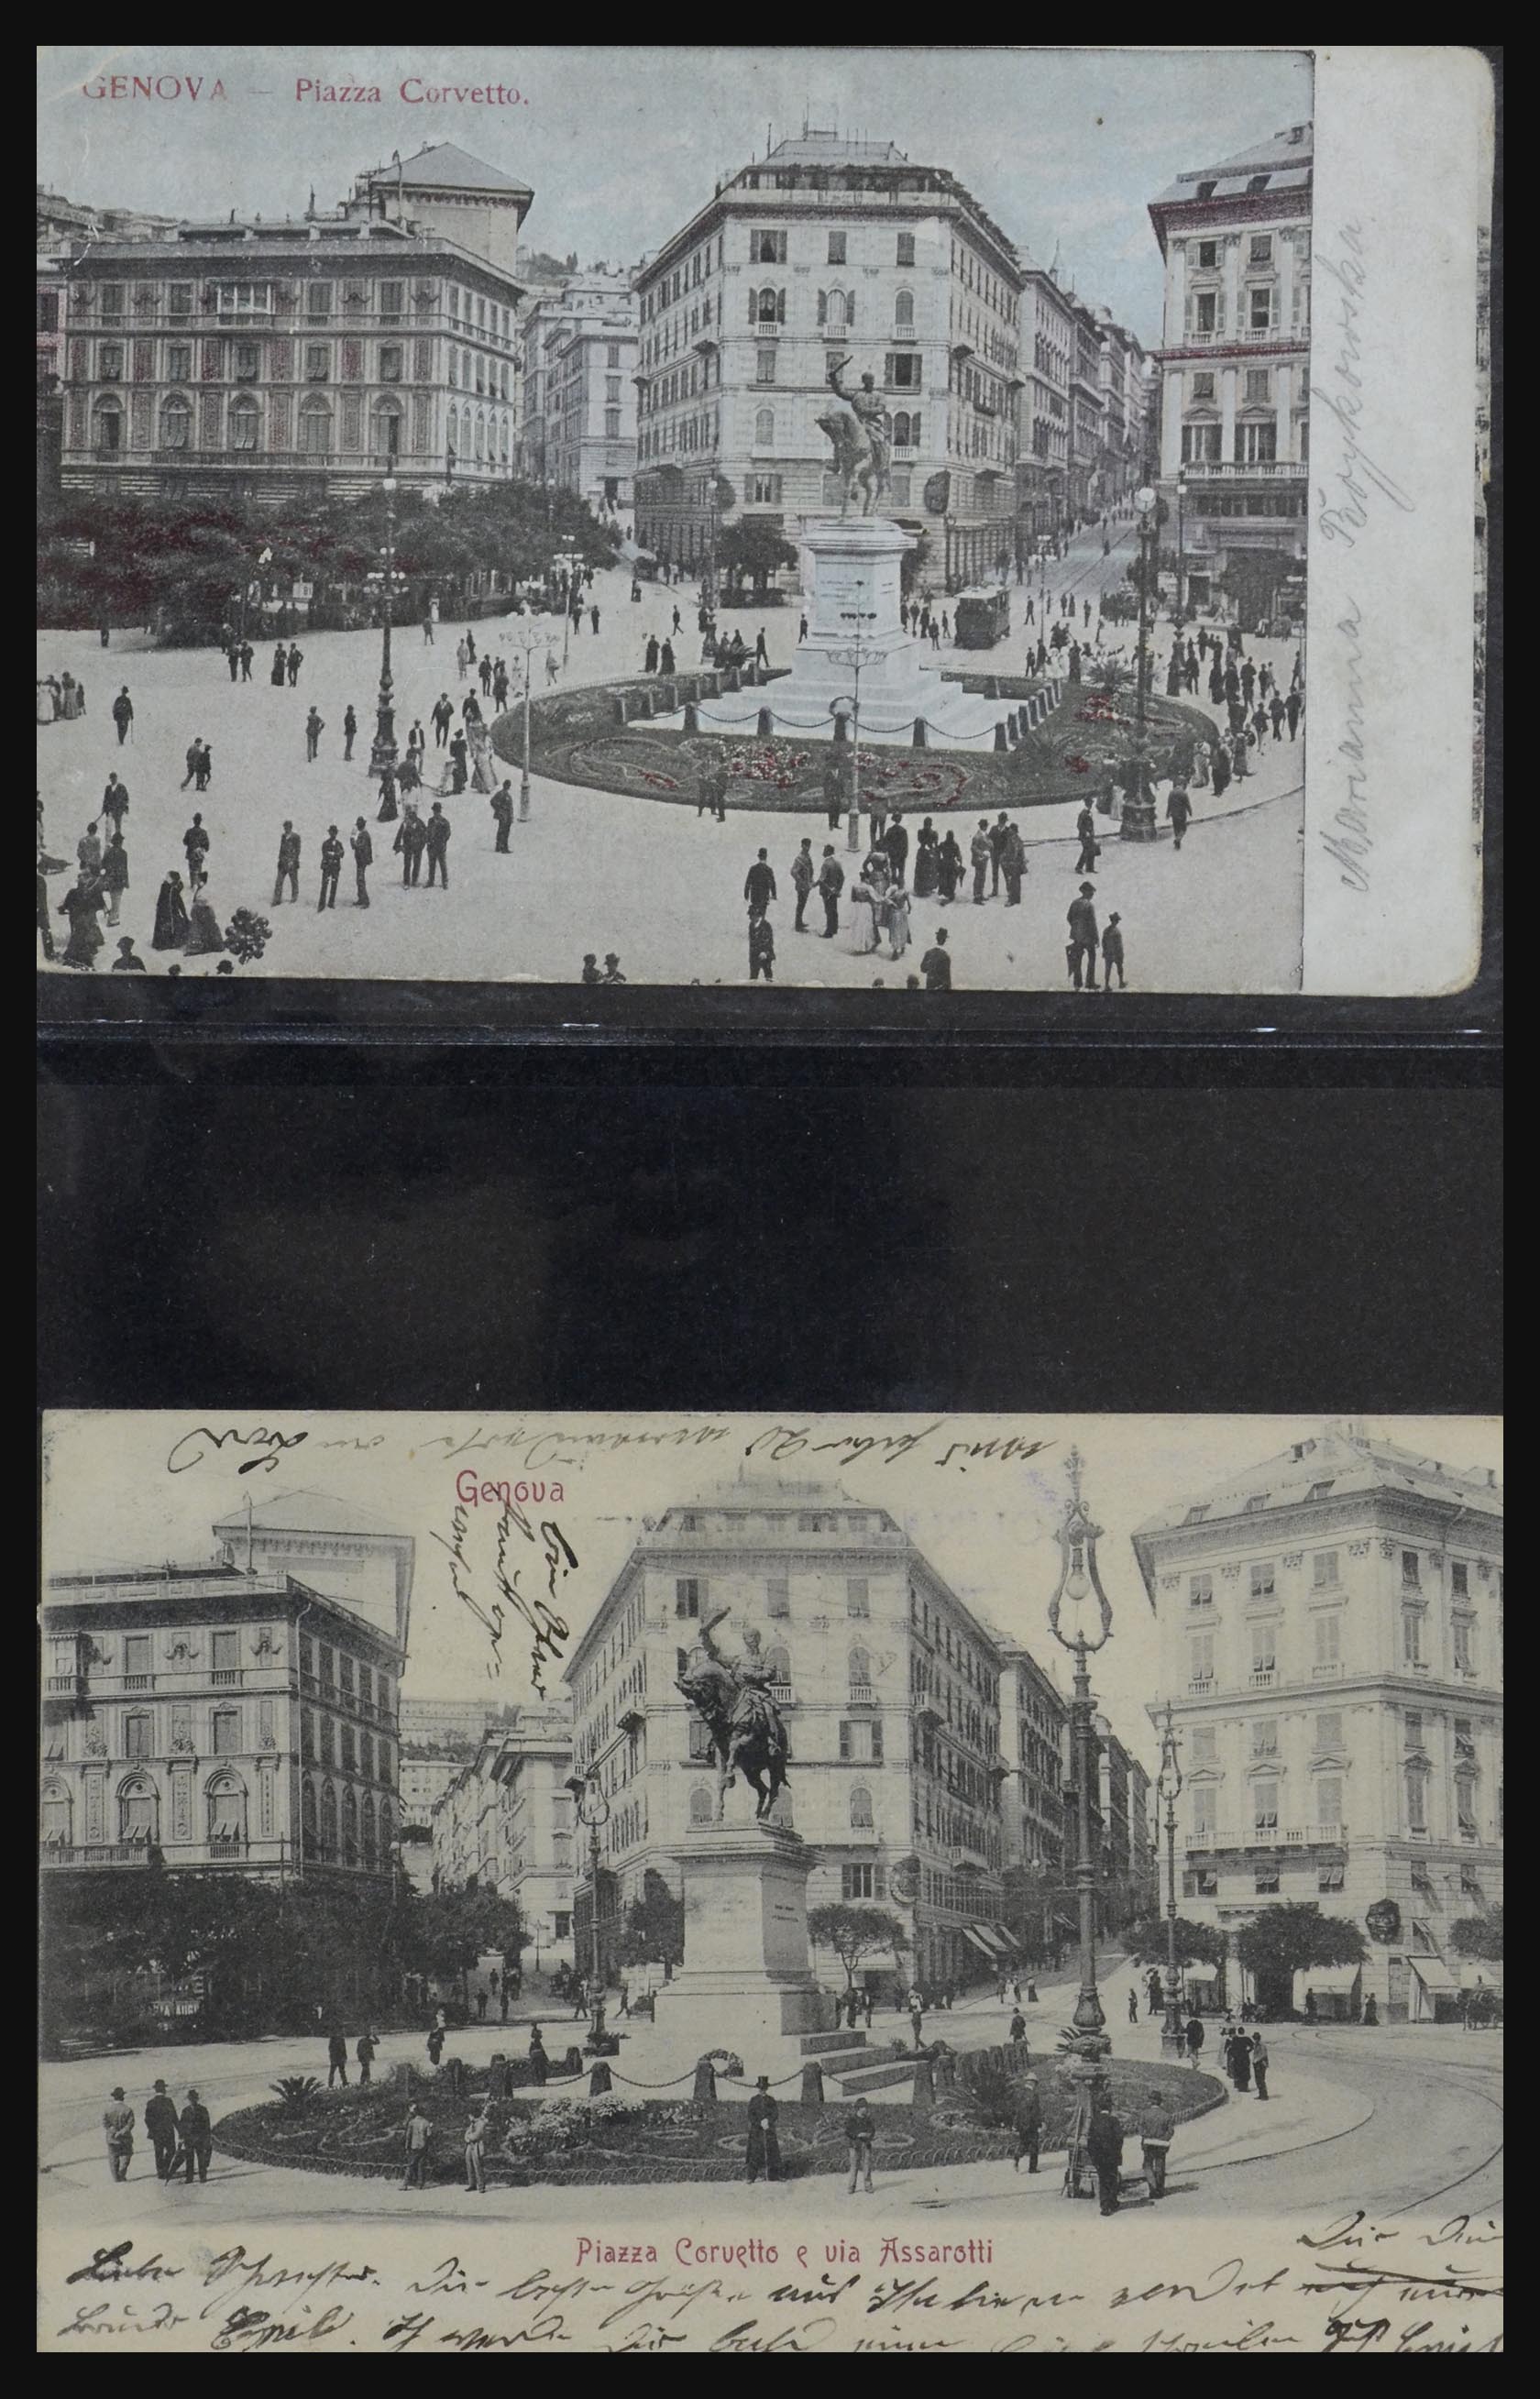 32255 0054 - 32255 Italië kaarten 1900-1945.